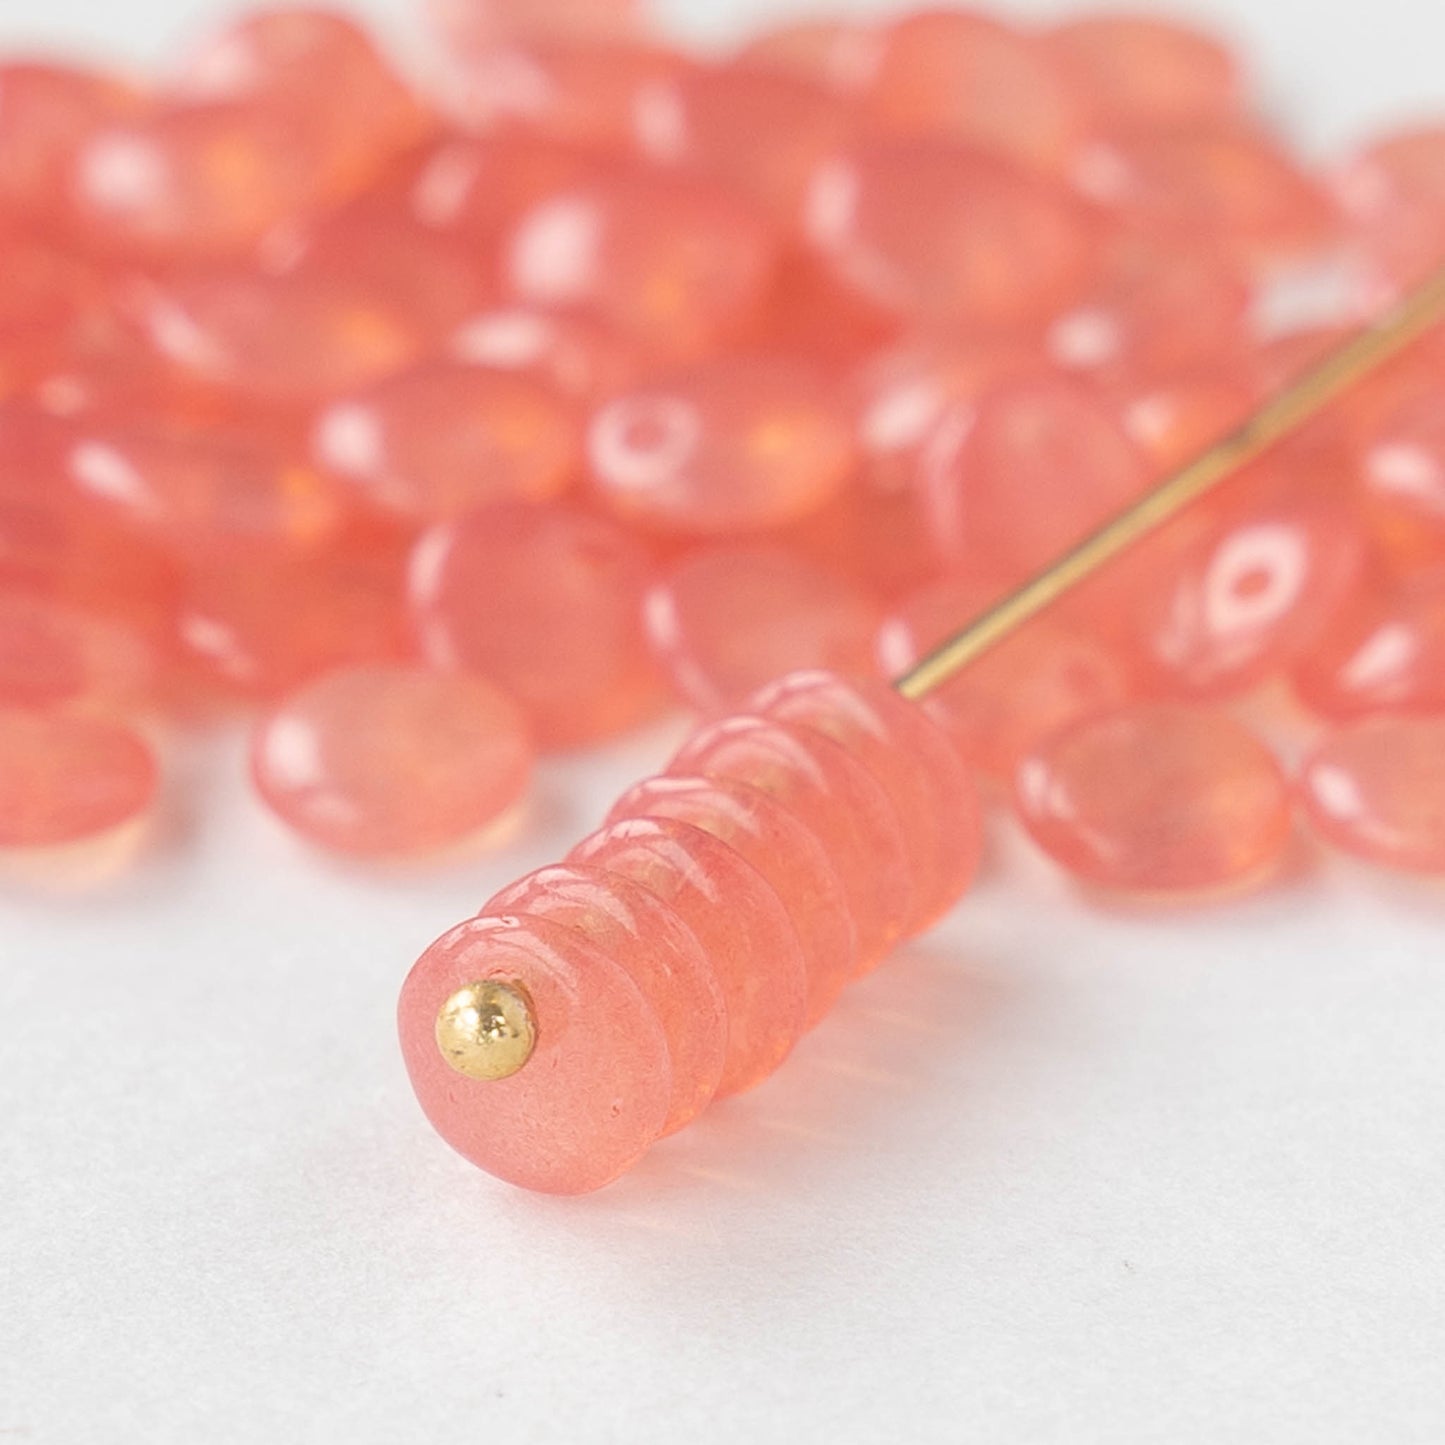 6mm Lentil Beads - Opaline Pink Rose - 100